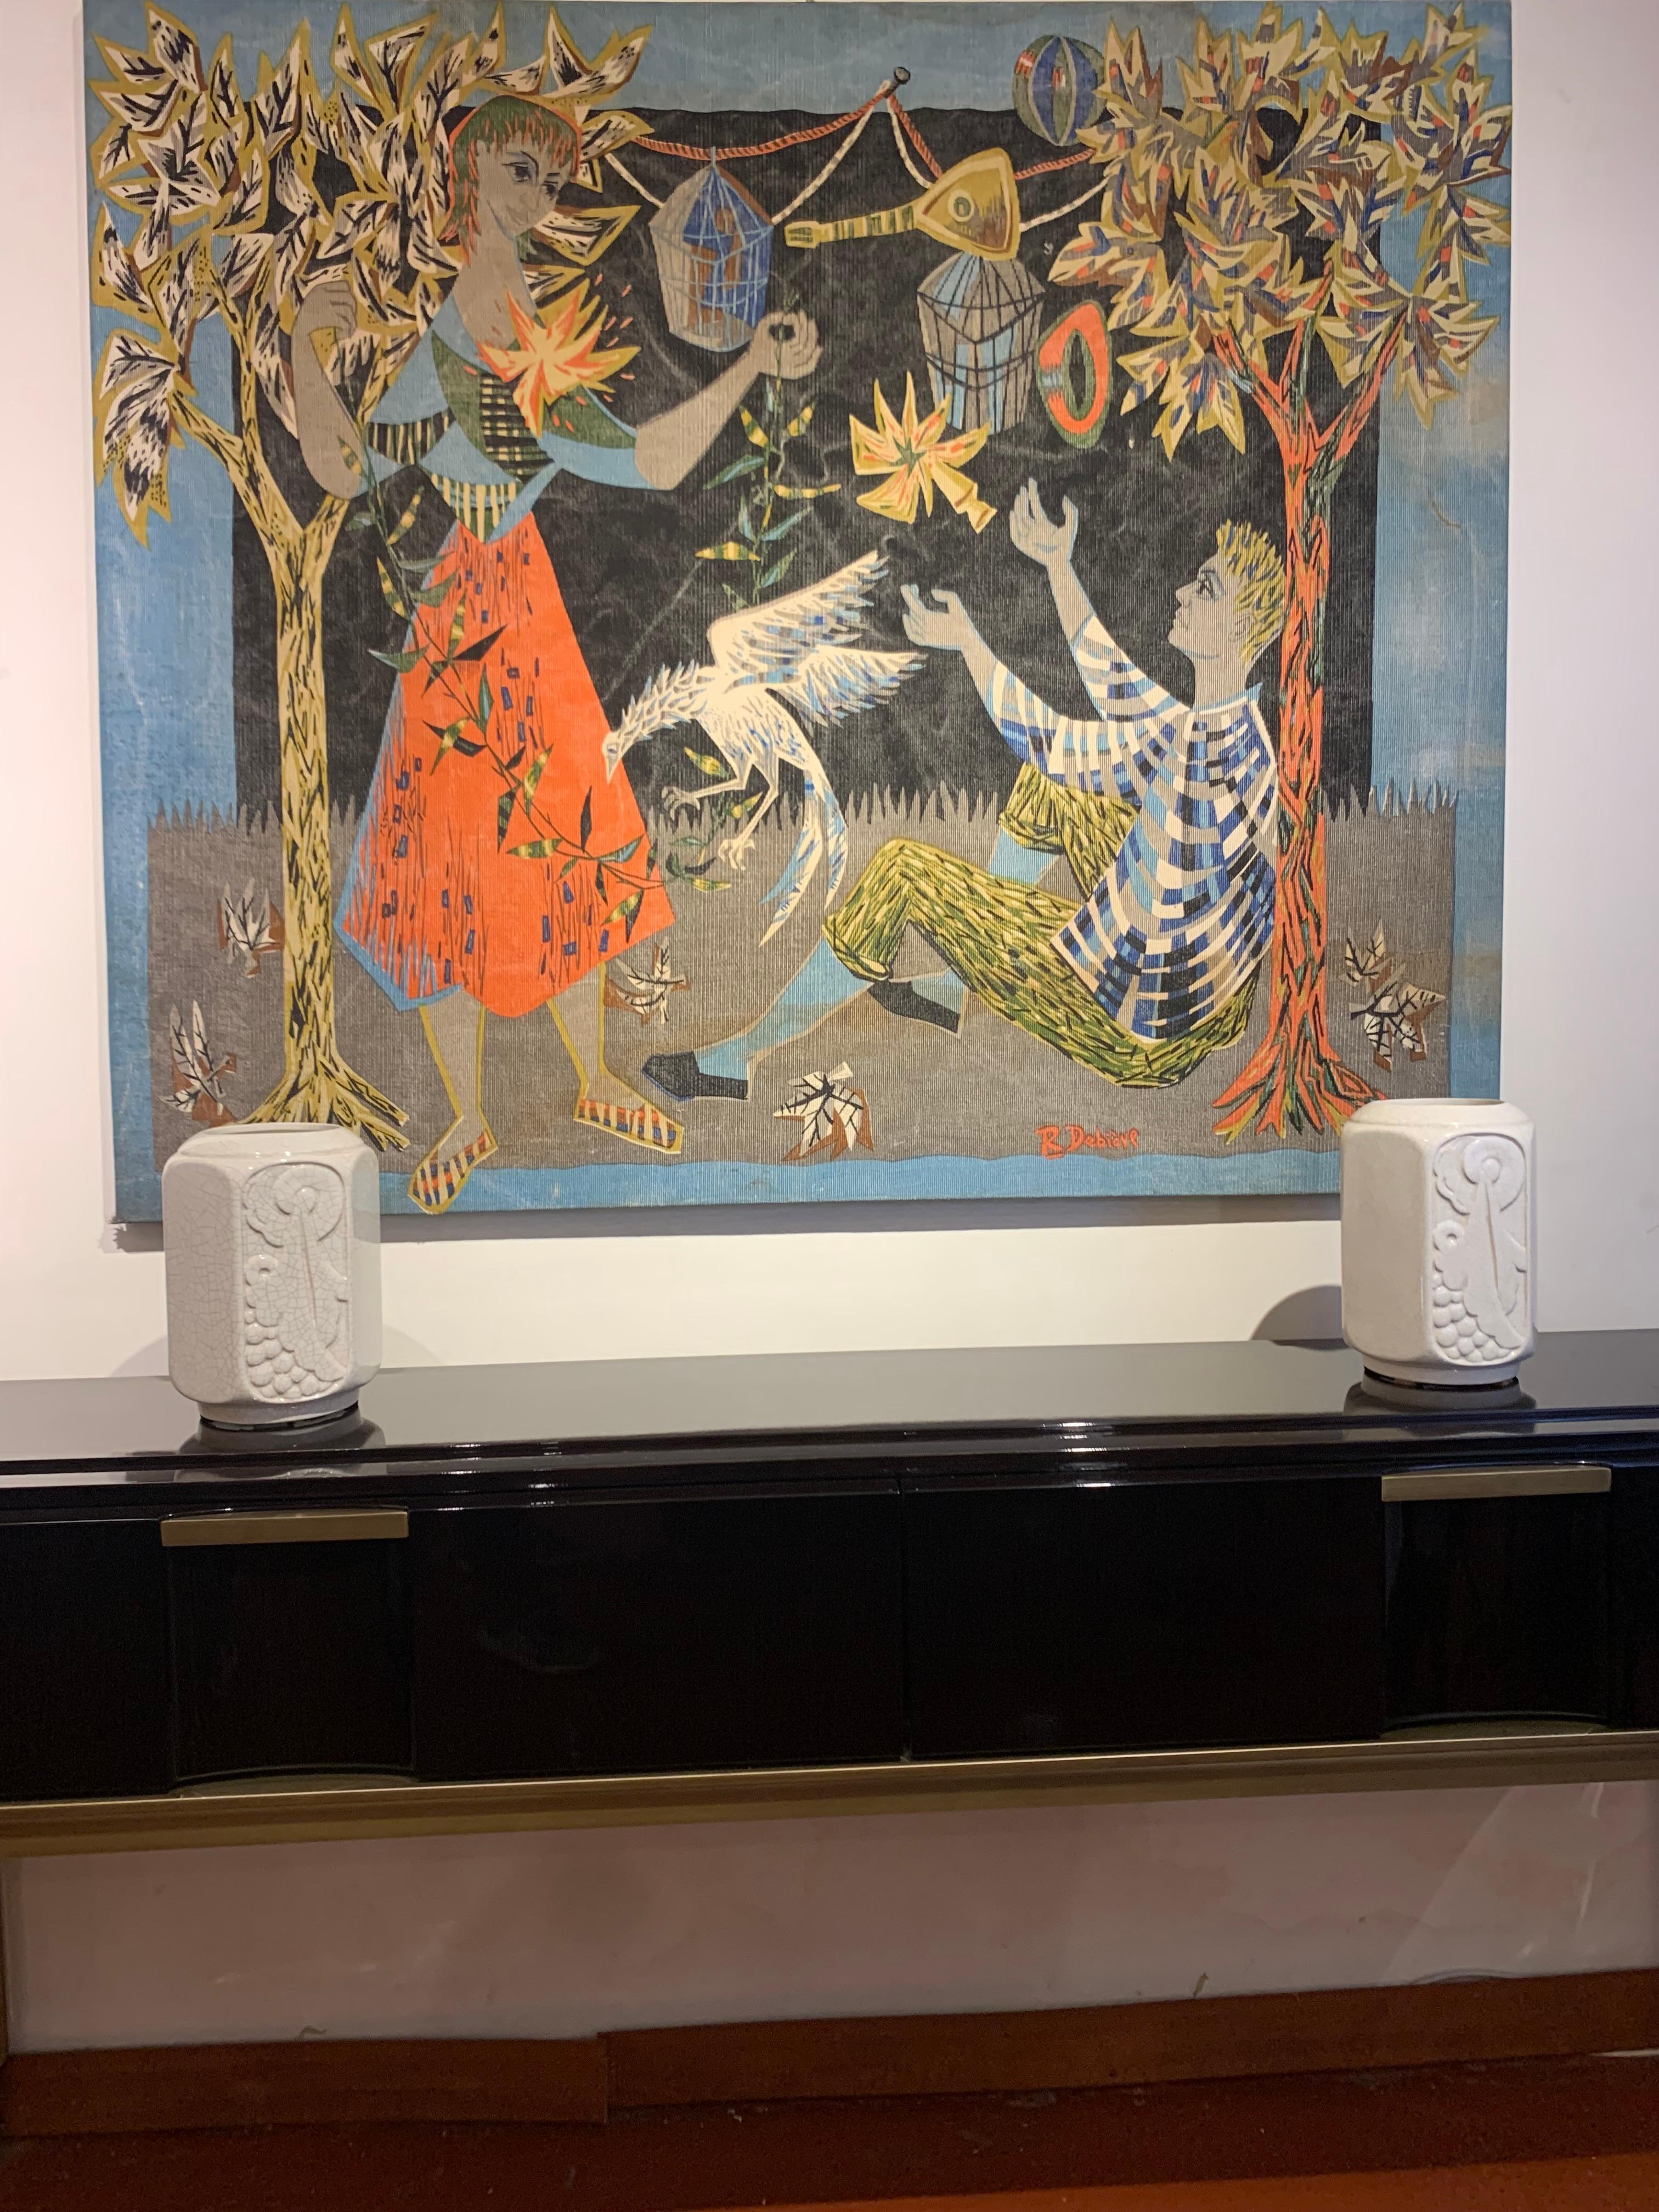 Tenture murale sur toile signée par Robert Debieve, France années 1950, aux couleurs vives représentant un homme et une femme dans une scène de nature avec une profondeur créée par l'utilisation des couleurs et la composition géométrique de